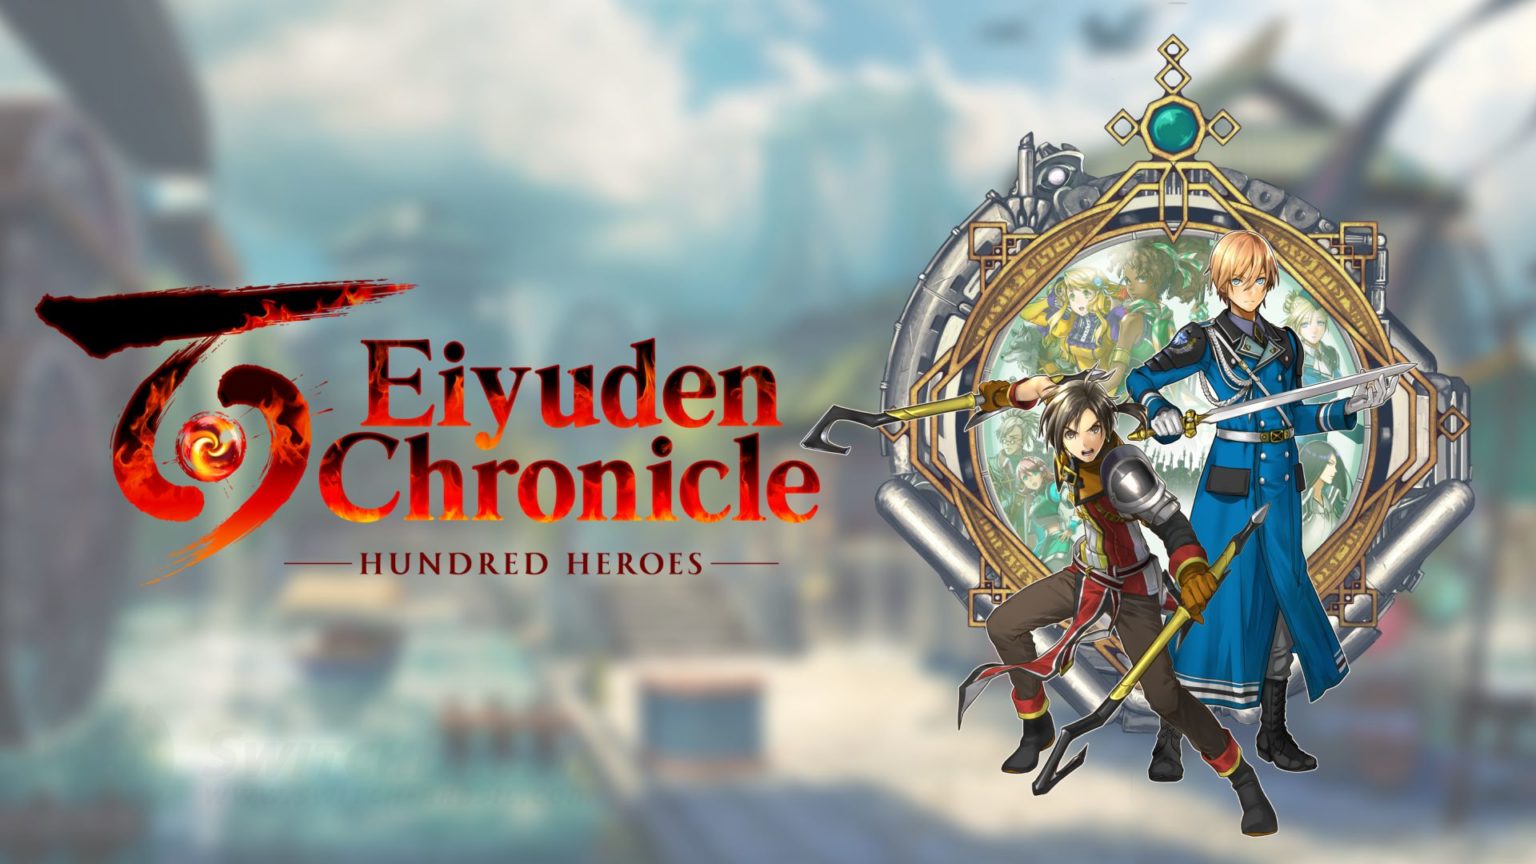 eiyuden chronicles hundred heroes